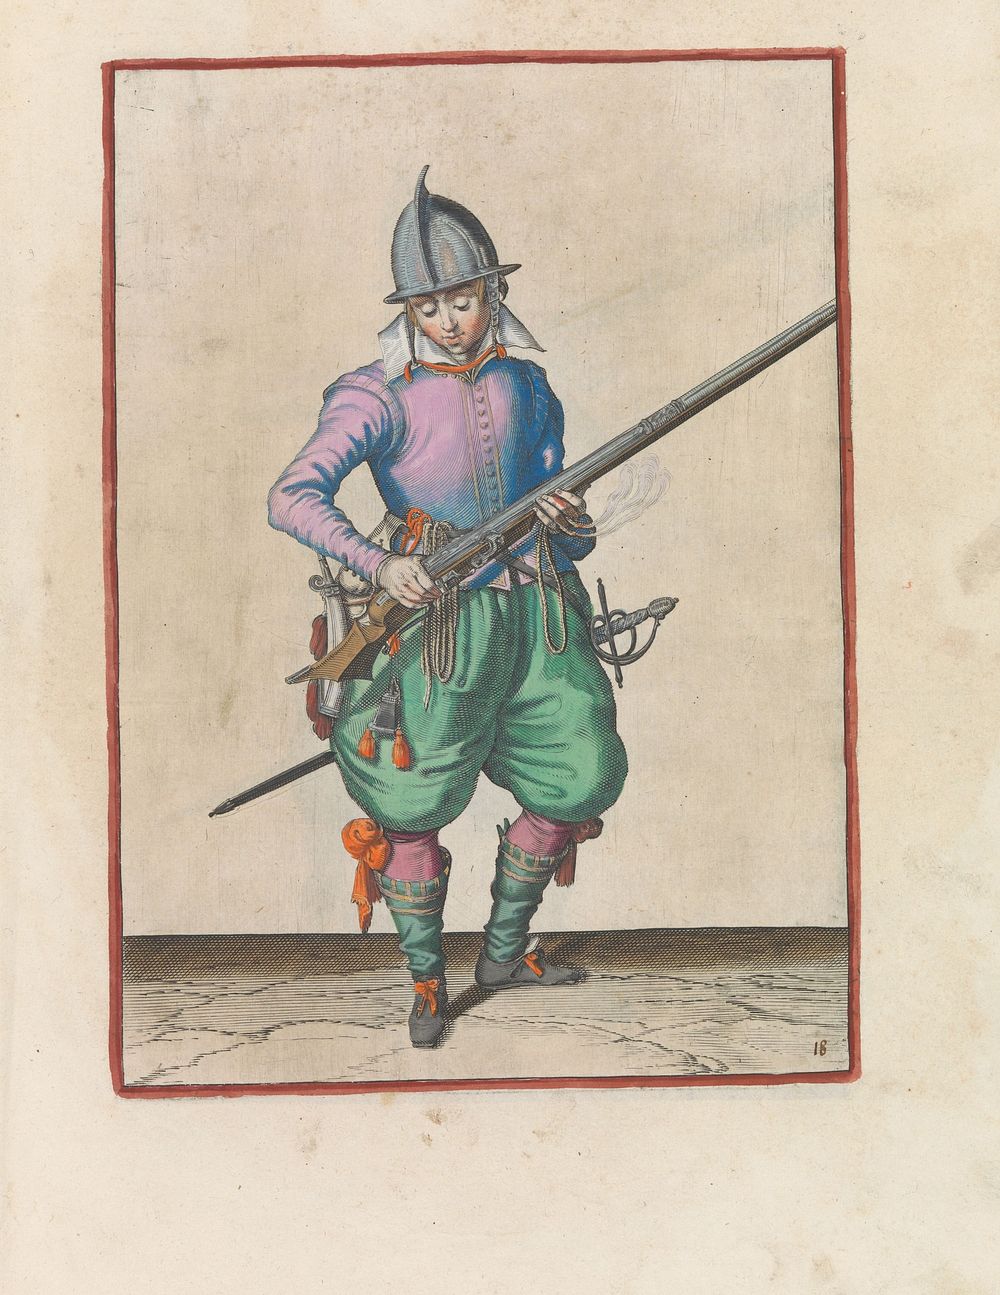 Soldaat die kruit van zijn roer schudt (c. 1597 - 1607) by Jacques de Gheyn II and Jacques de Gheyn II